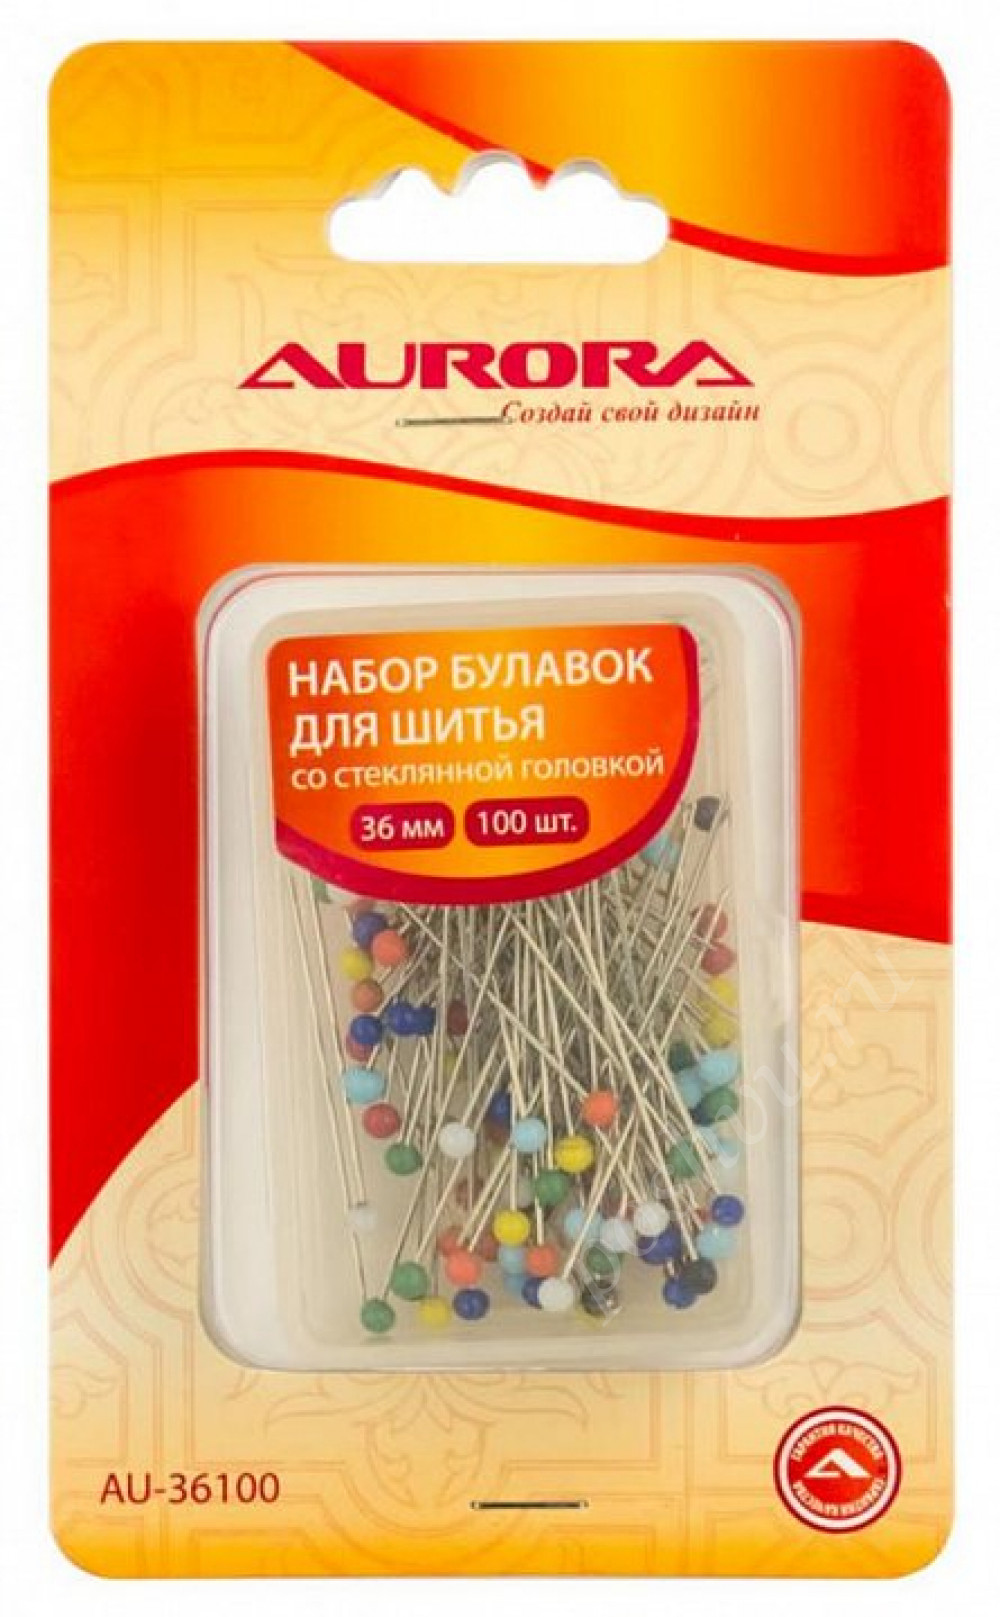 Набор булавок для шитья Aurora со стеклянной головкой, 36мм, 100шт/уп